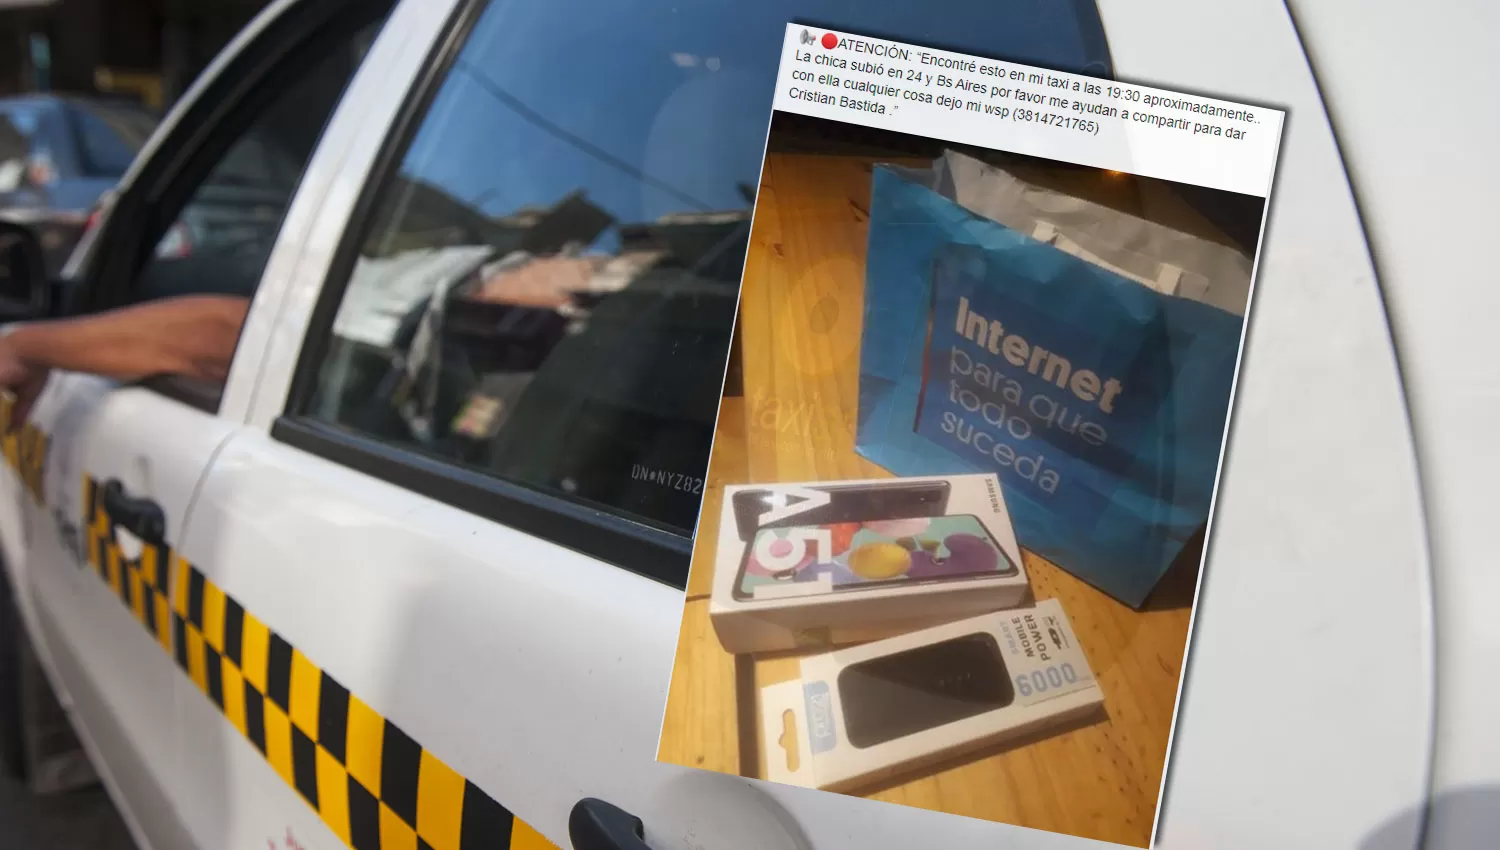 Un tucumano encontró un celular nuevo en su taxi y buscó a la dueña por Facebook